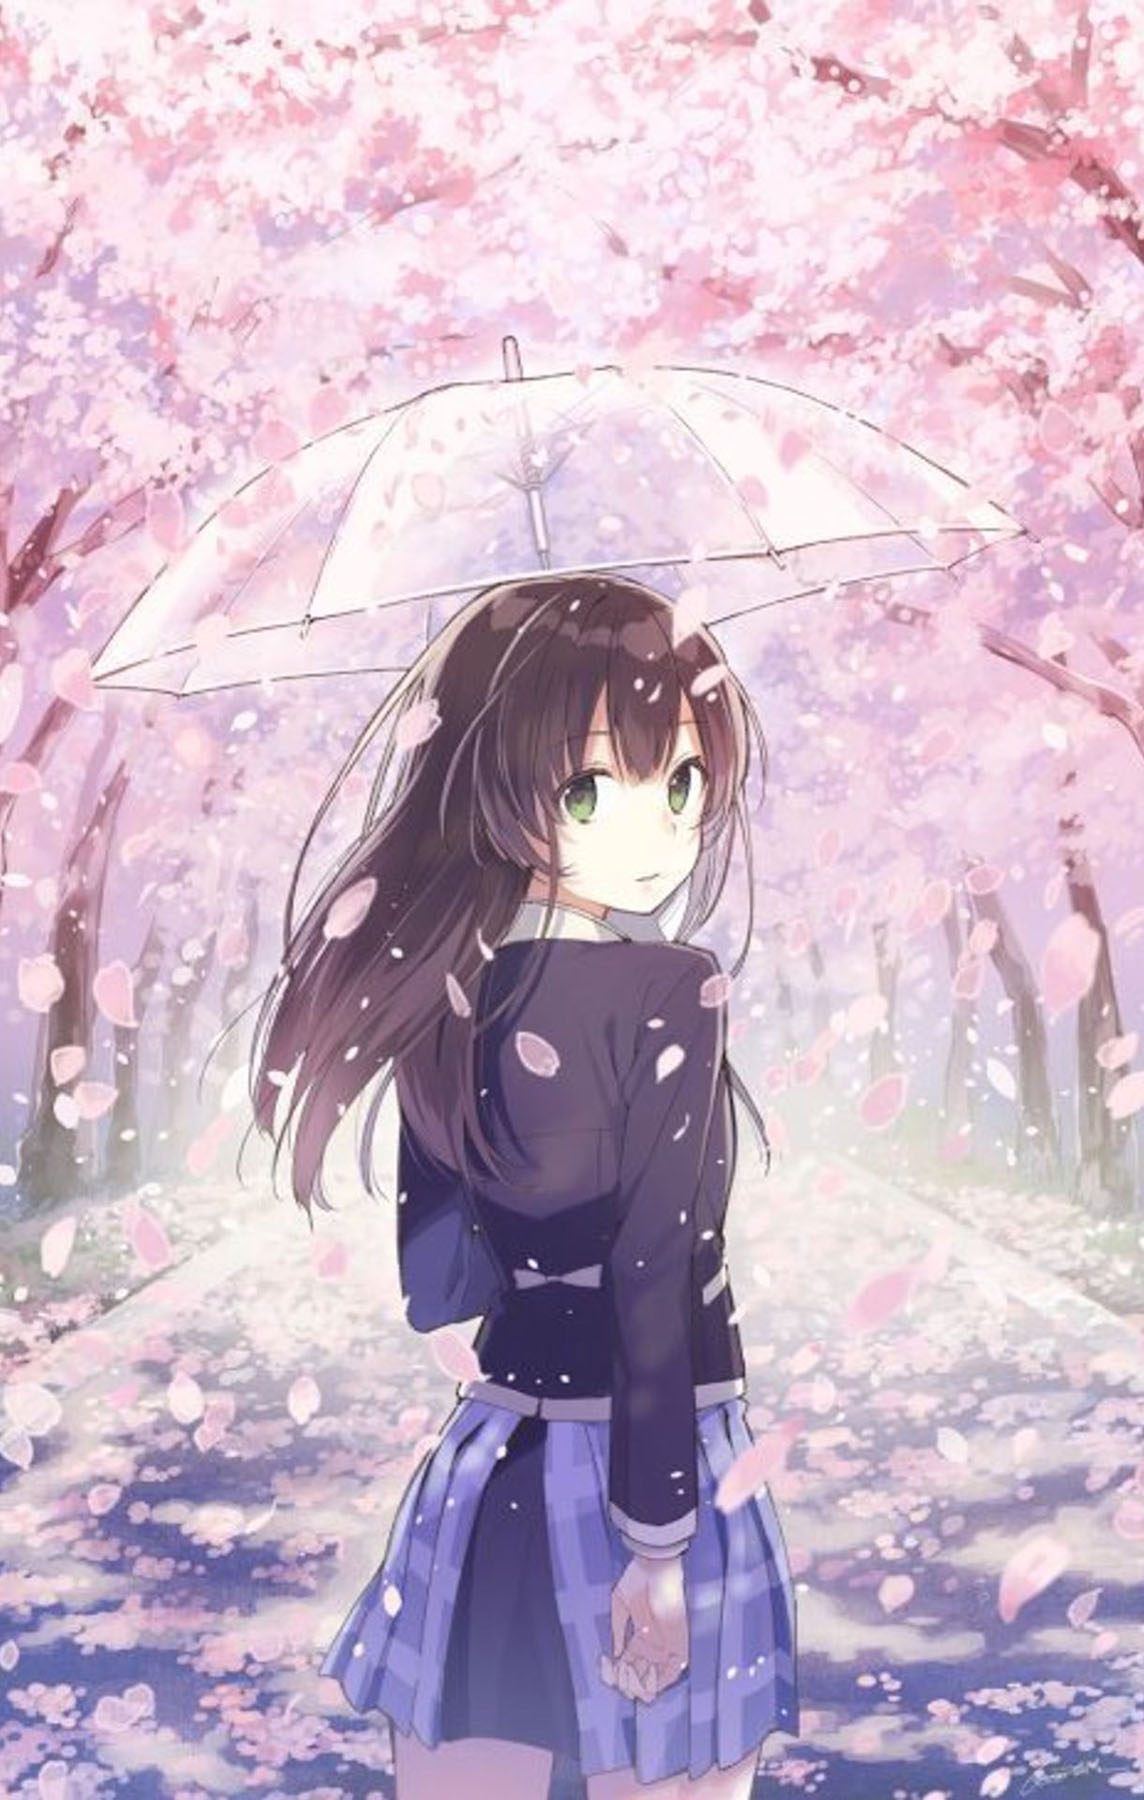 Hoa đào trong anime mang lại cho chúng ta cảm giác yêu đời và đầy niềm hy vọng. Hãy thưởng thức những hình ảnh đẹp nhất của loại hoa này trong anime, với sự pha trộn của nghệ thuật và tinh tế.